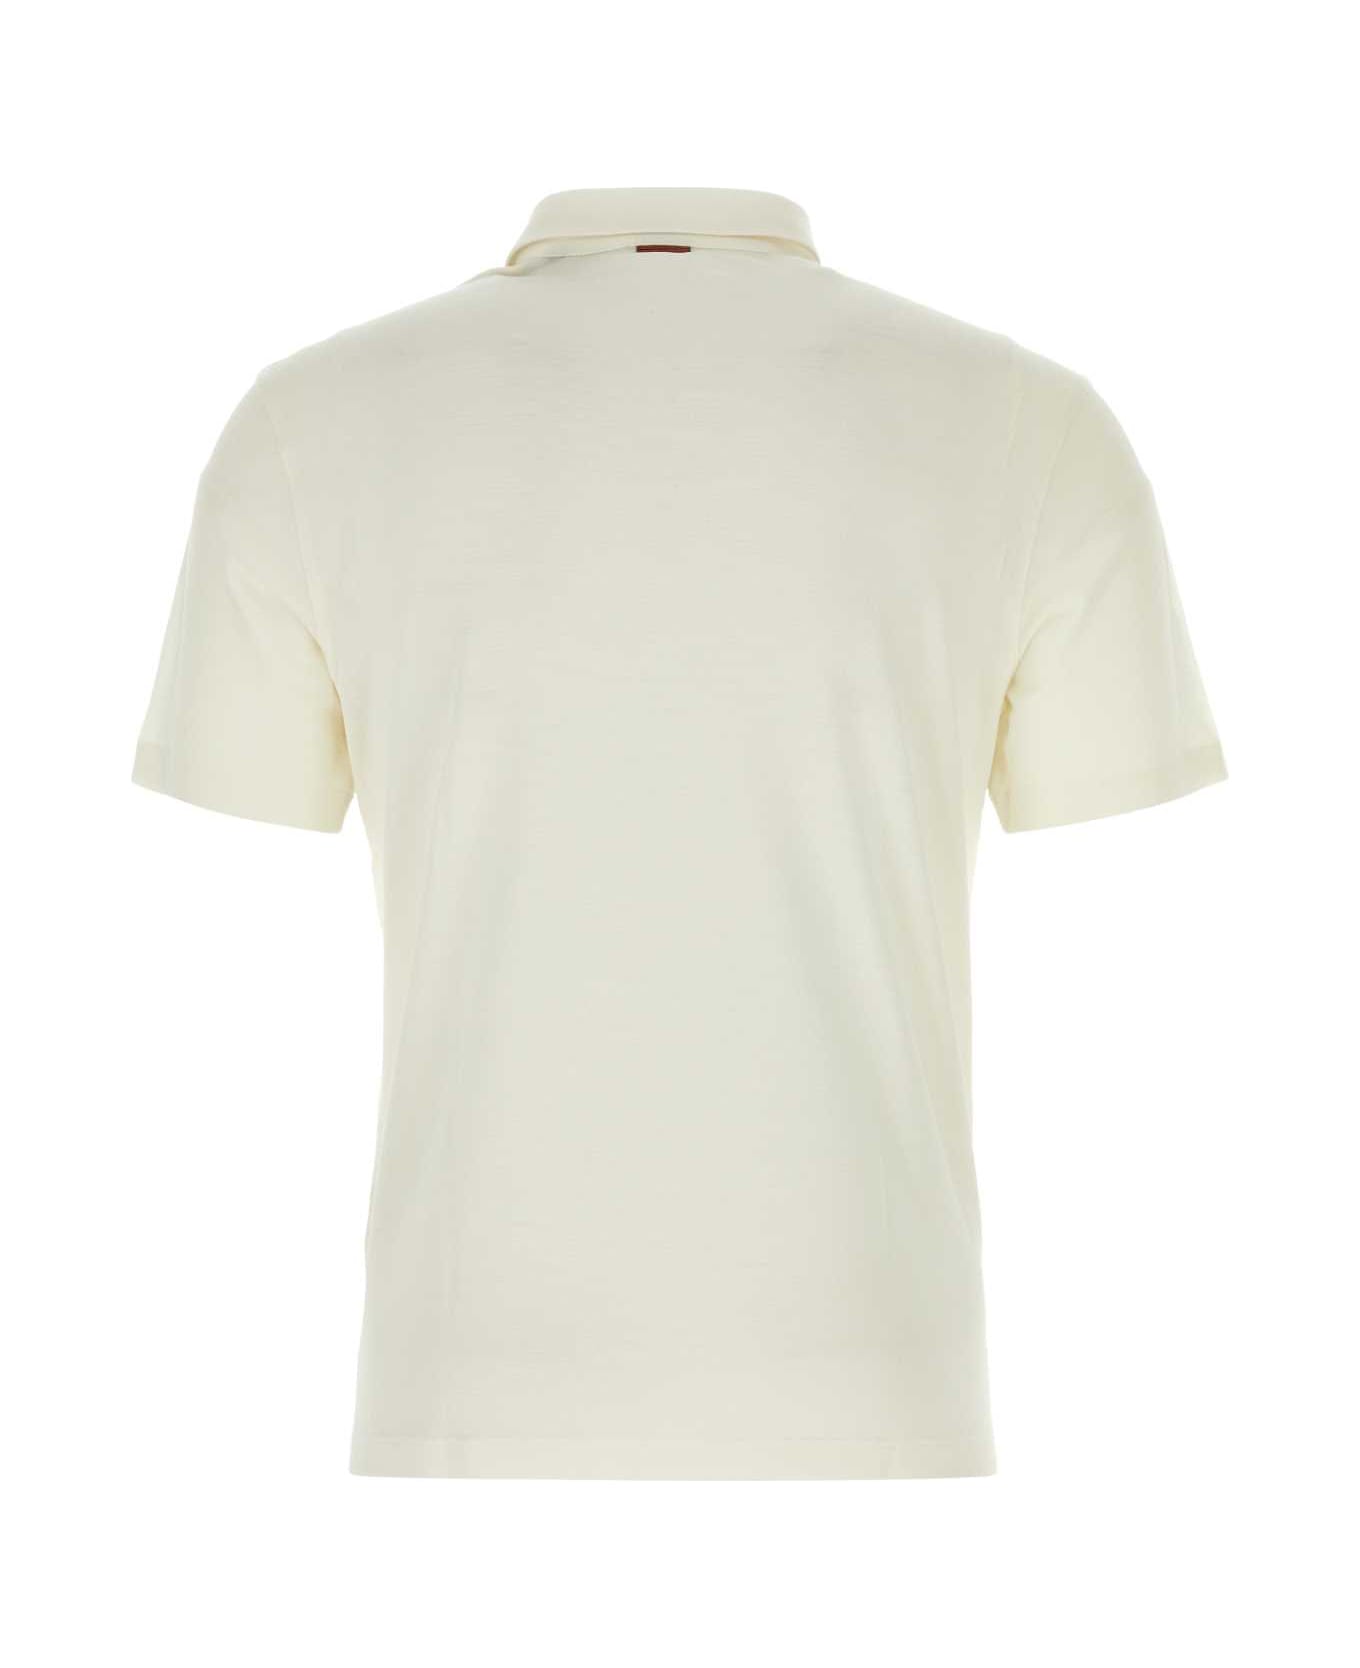 Zegna Ivory Piquet Polo Shirt - N01